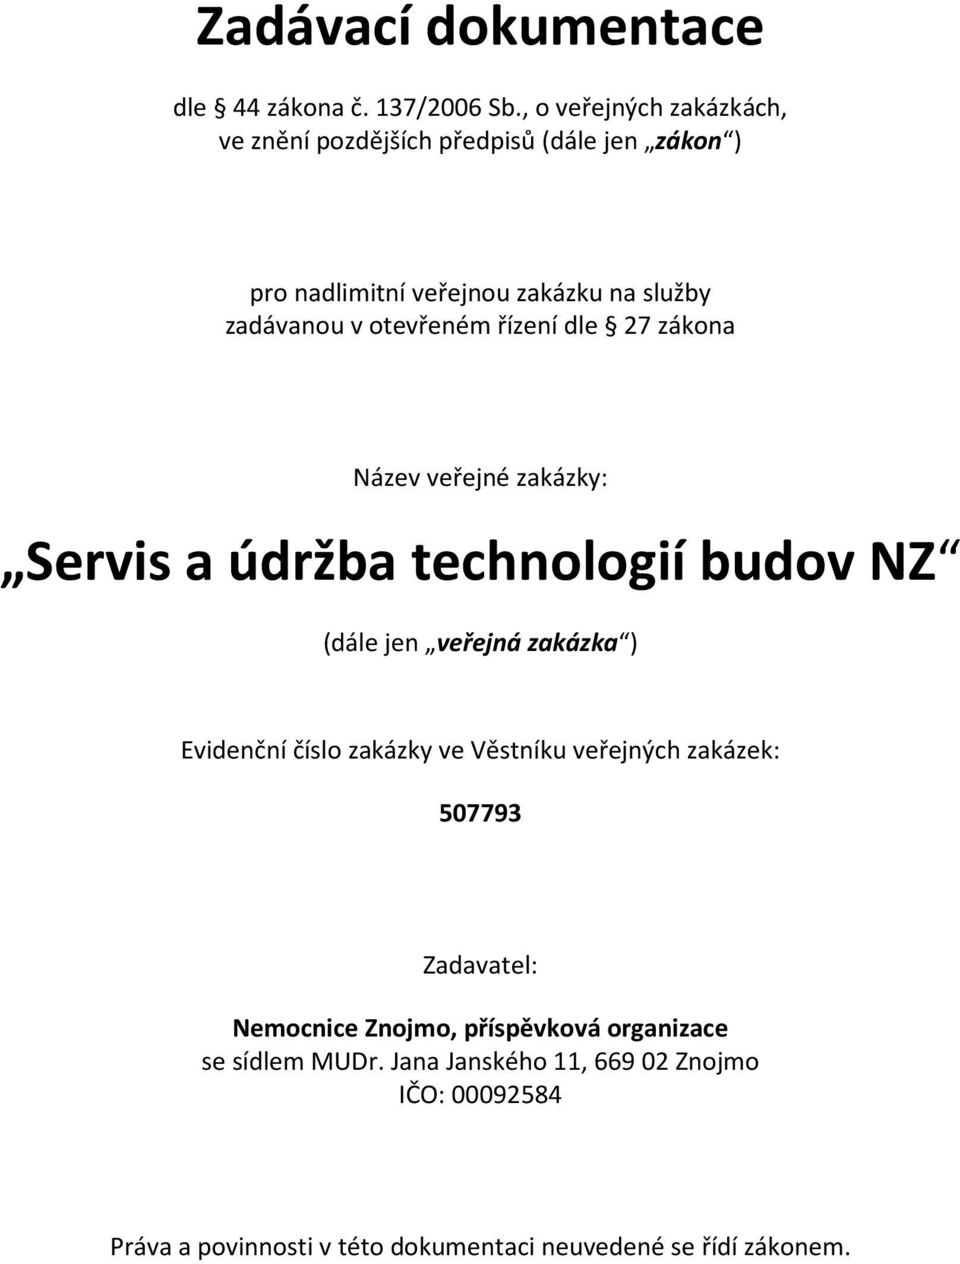 otevřeném řízení dle 27 zákona Název veřejné zakázky: Servis a údržba technologií budov NZ (dále jen veřejná zakázka ) Evidenční